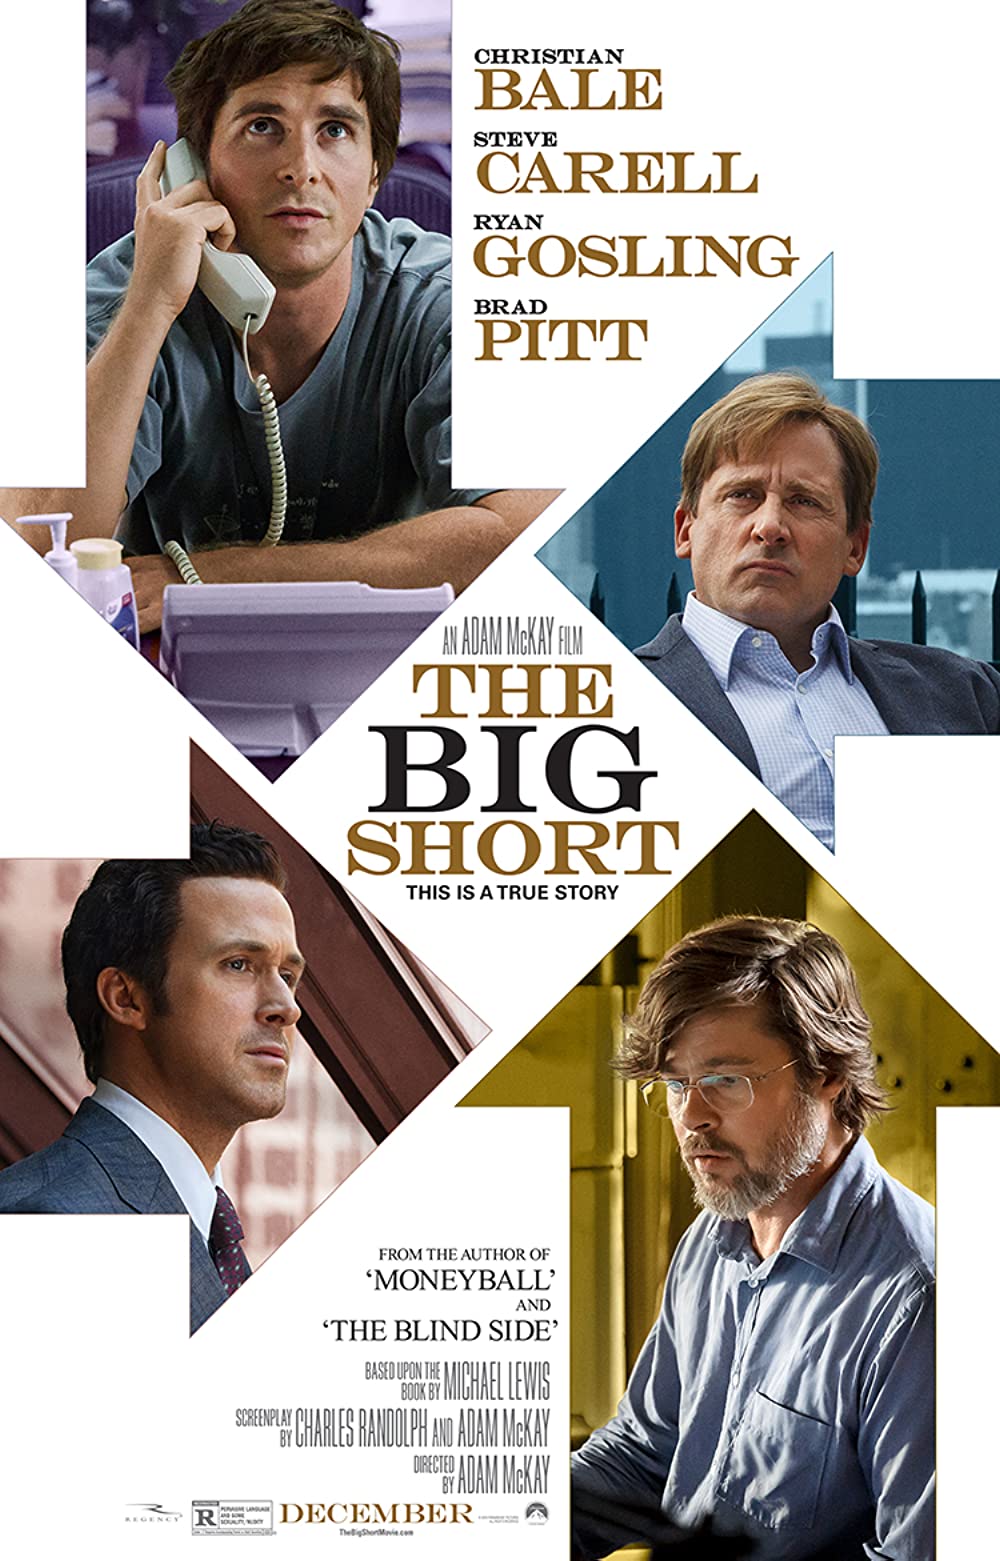 The Big Short (2015) ★★★★☆